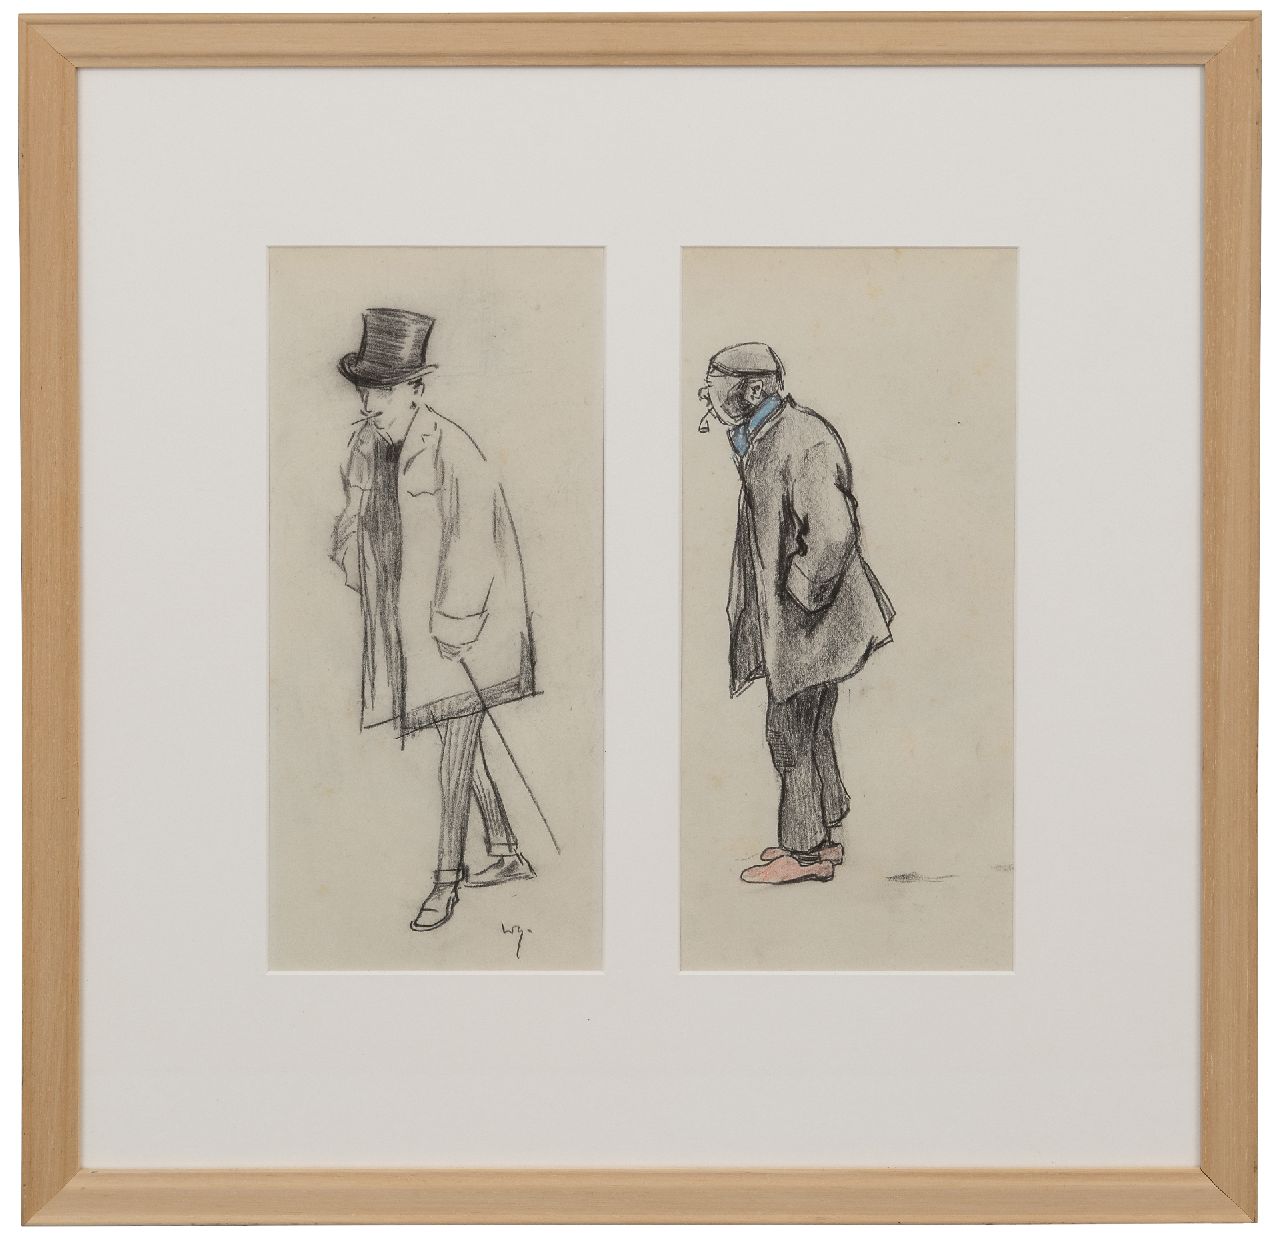 Sluiter J.W.  | Jan Willem 'Willy' Sluiter | Aquarellen en tekeningen te koop aangeboden | Een heer met hoge hoed; een werkman met pijp, potlood en kleurpotlood op papier 29,5 x 30,0 cm, gesigneerd linksonder